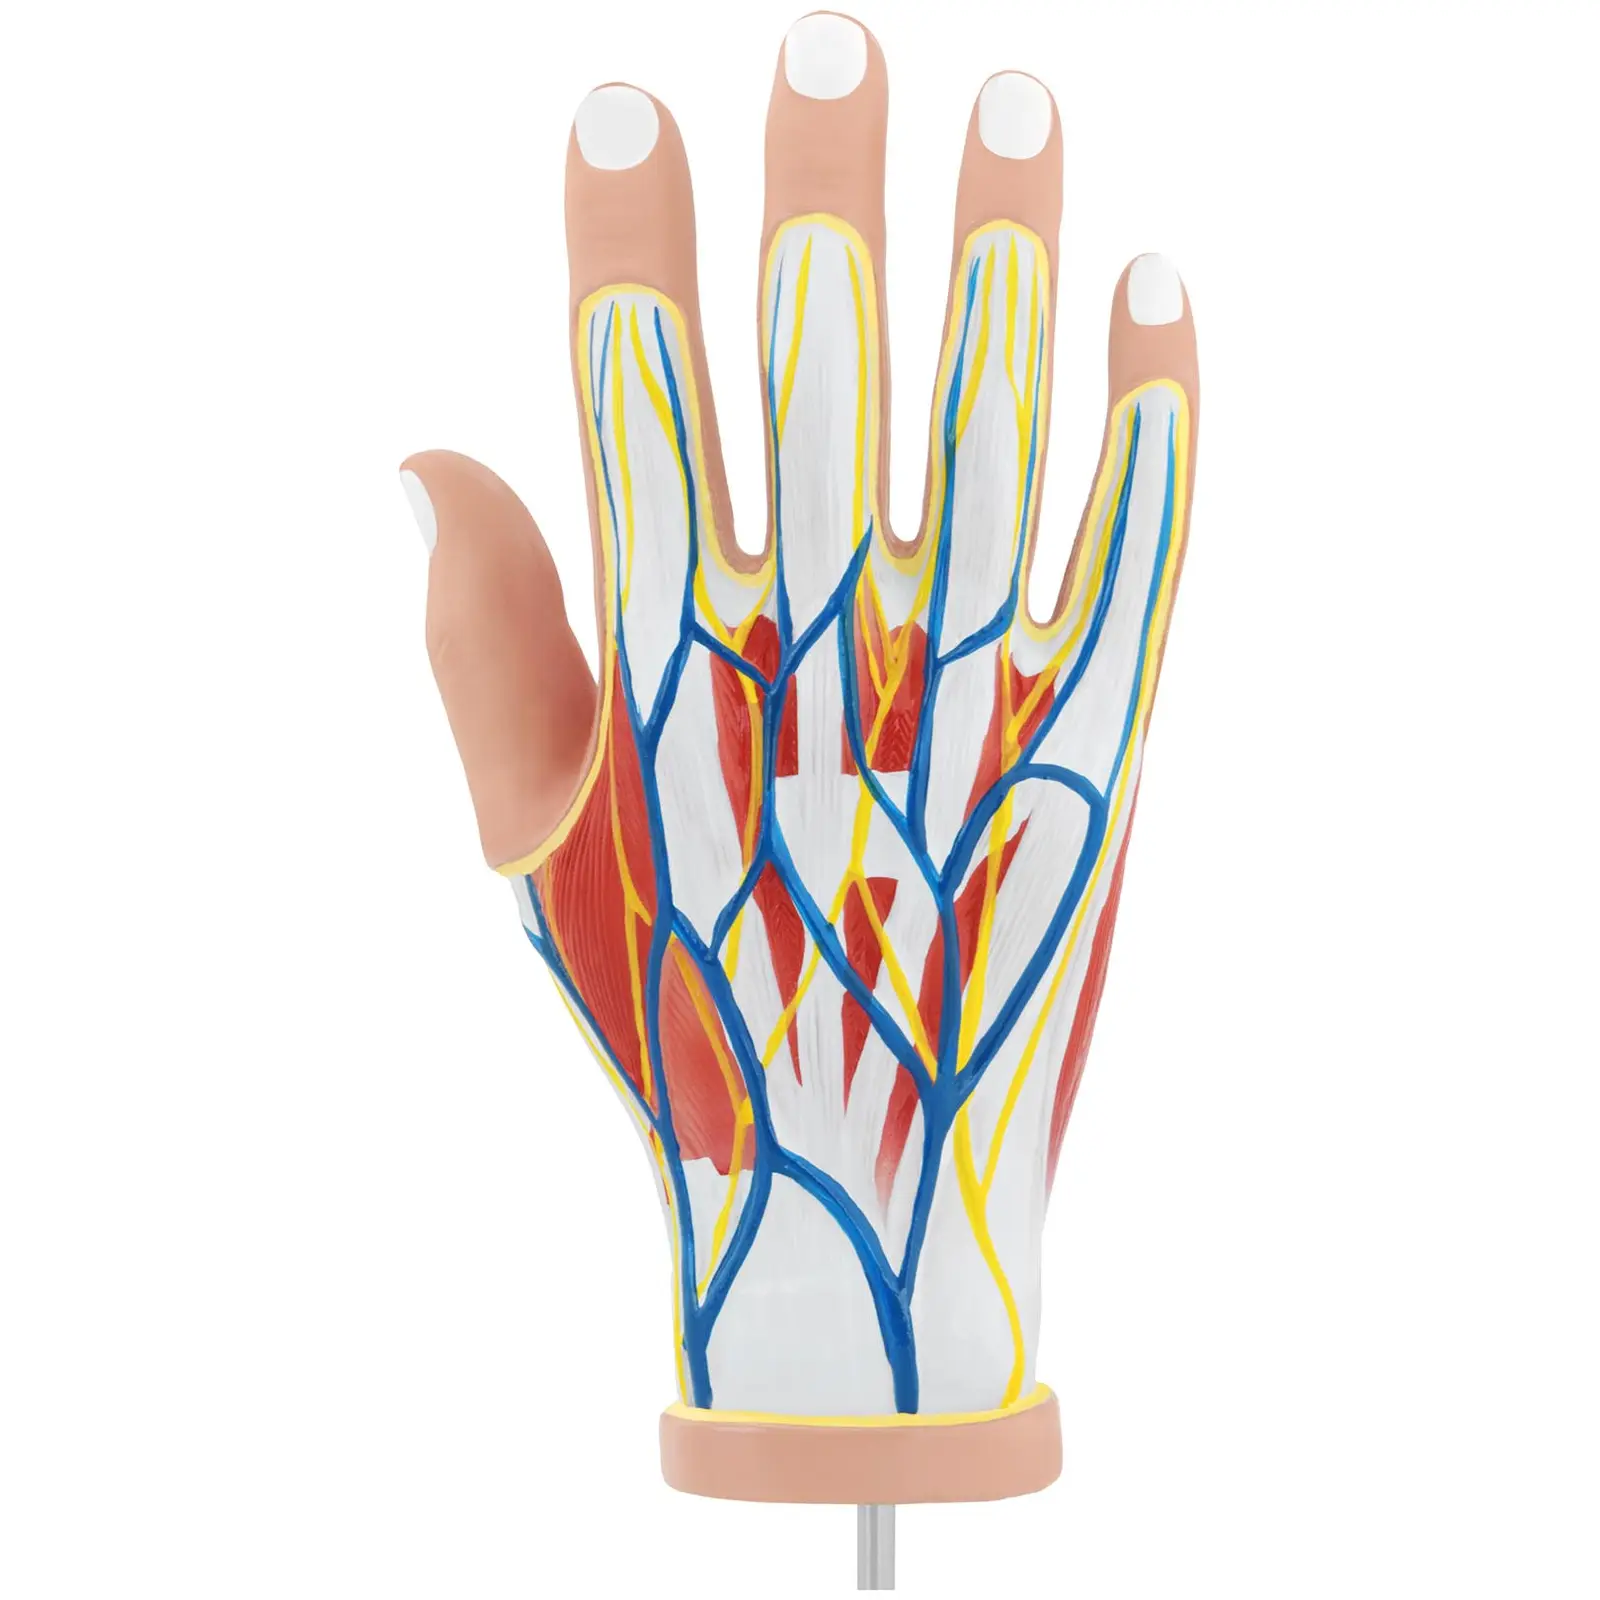 Dłoń - model anatomiczny